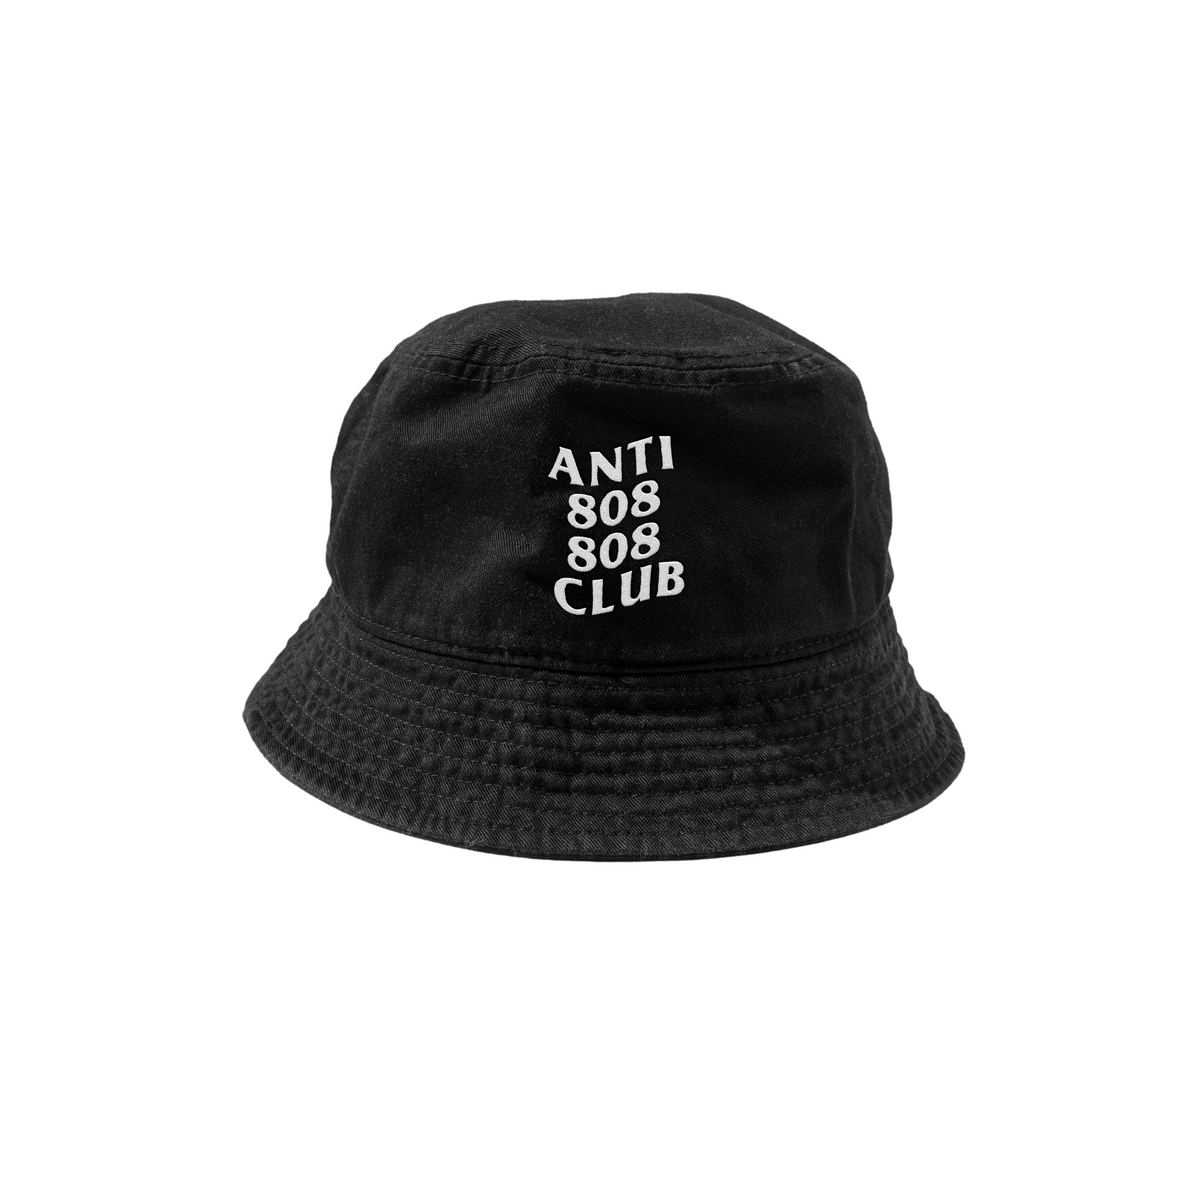 Anti 808 808 Club Capsule Bucket Hat (OPEN PRE-ORDER)